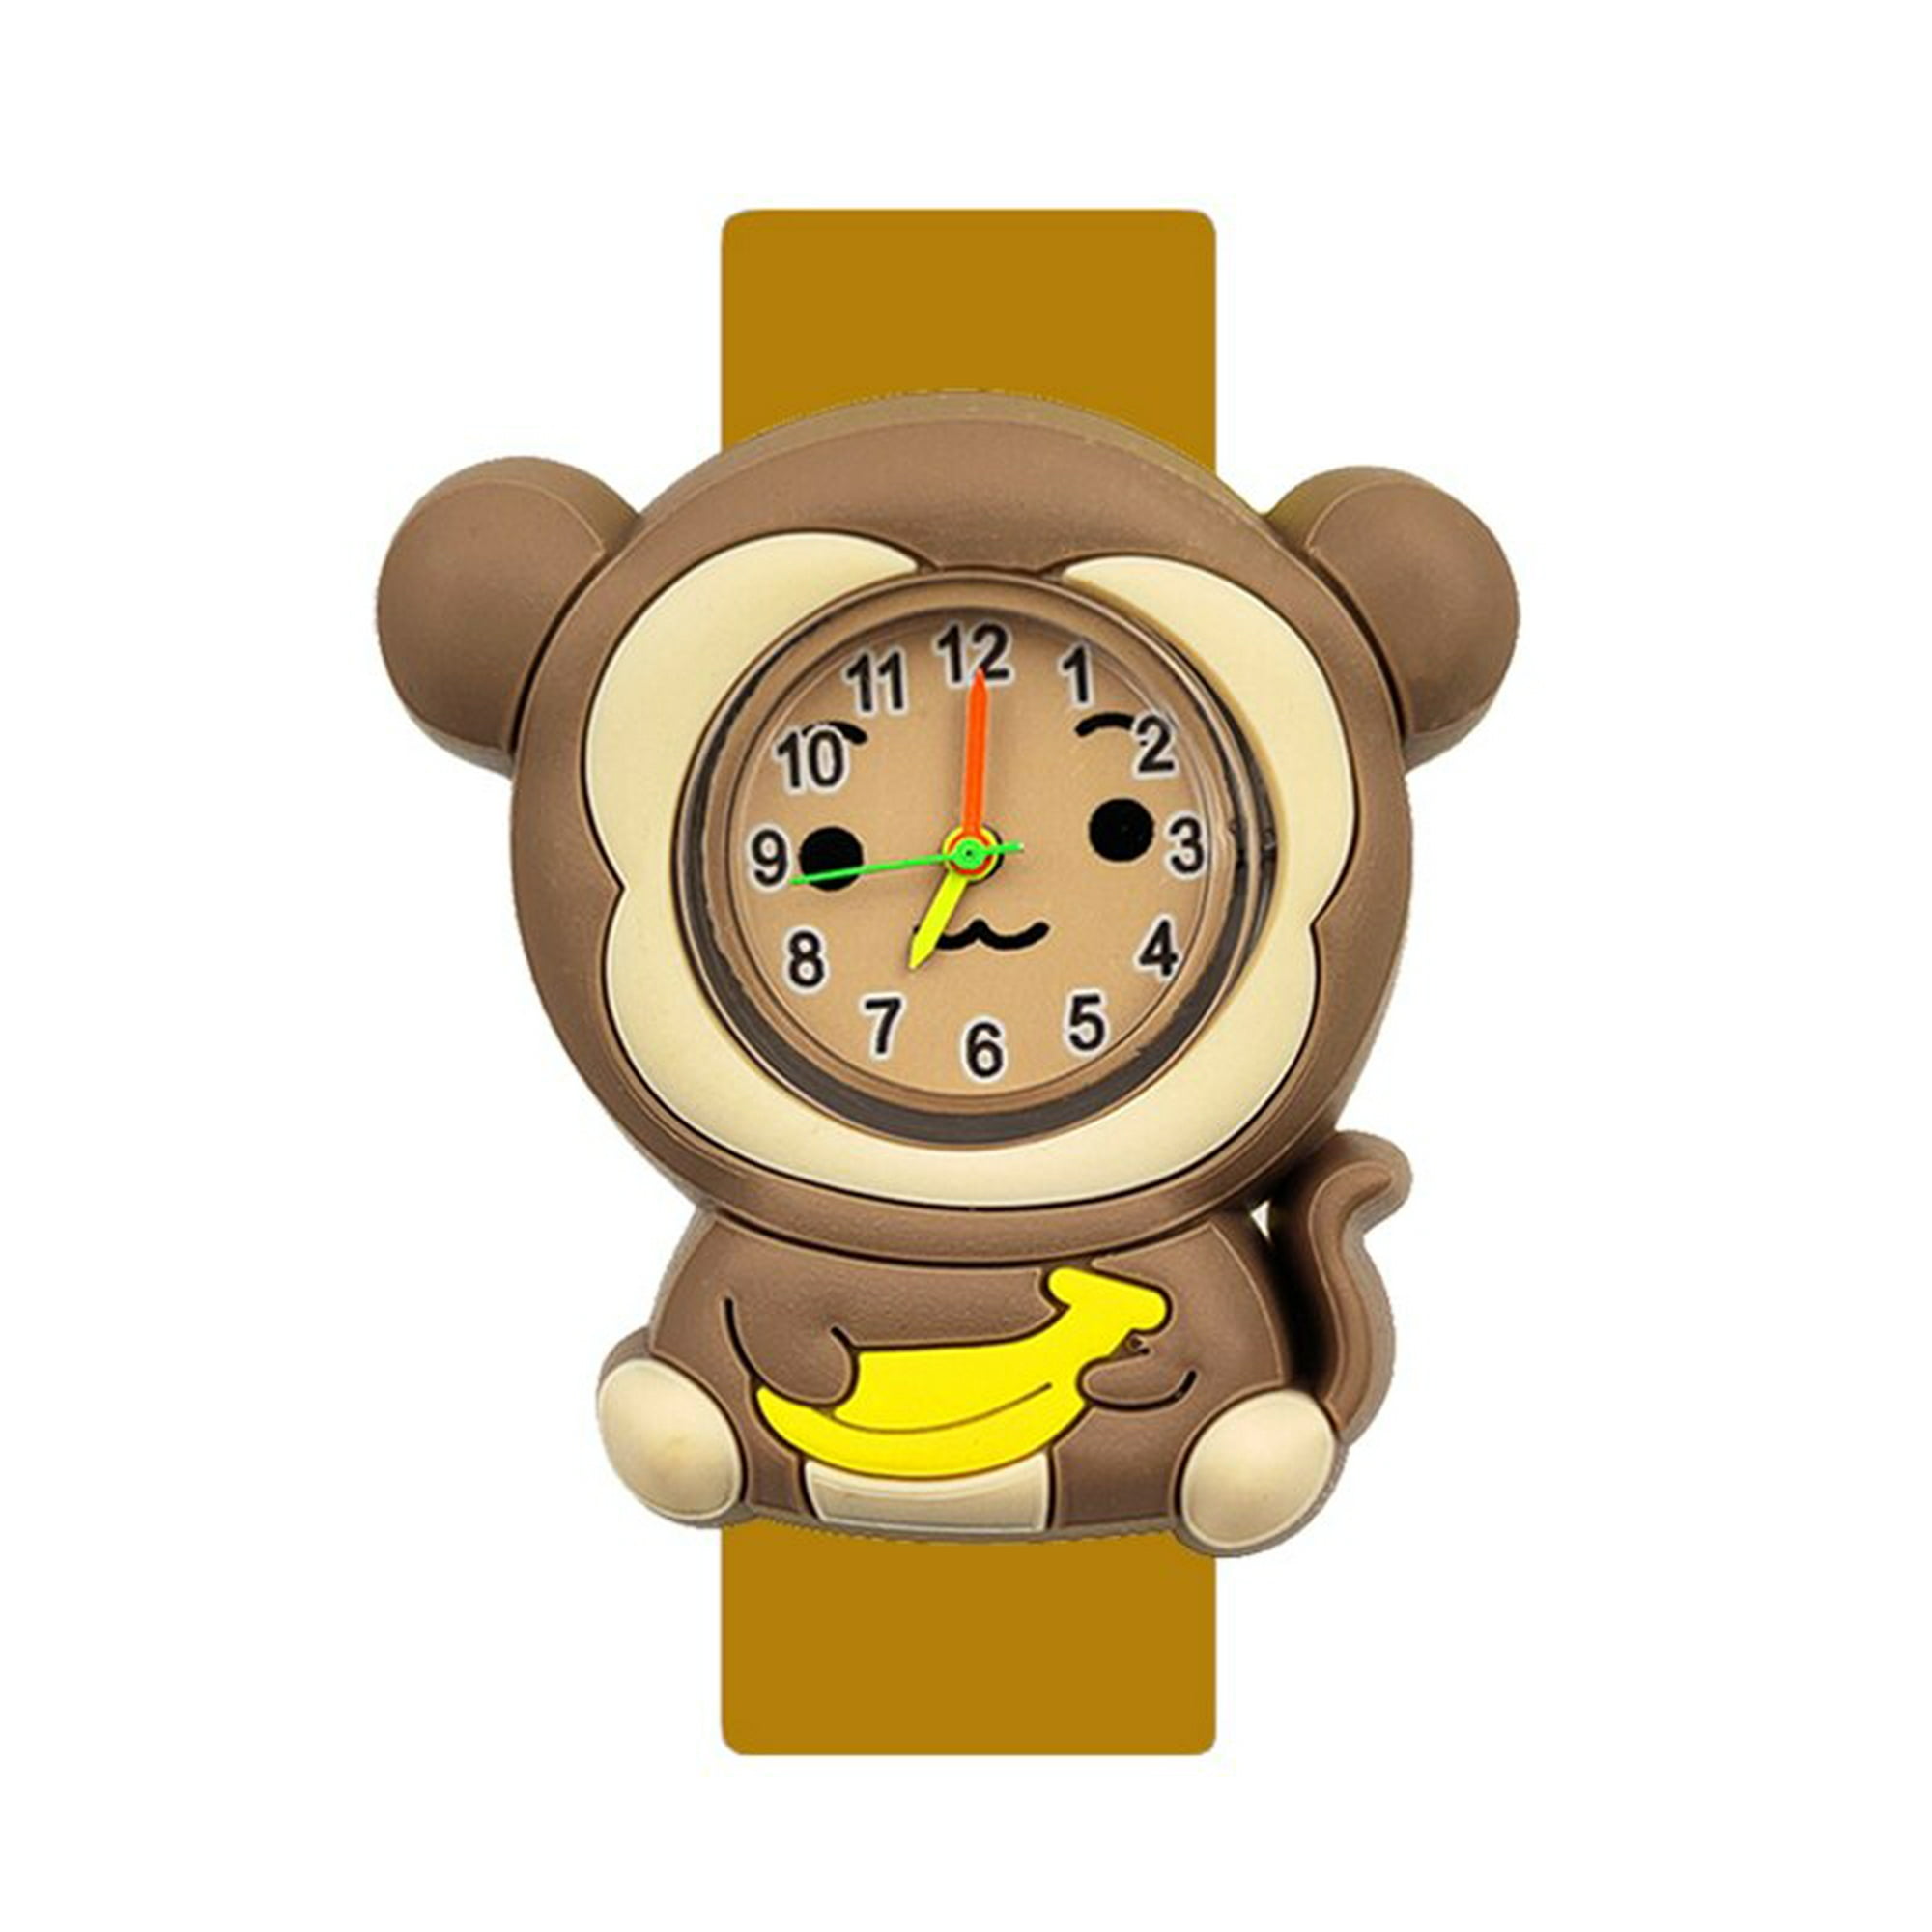 Regalo Reloj para niños Juguetes para niños de 3 a 9 años de edad Peonza  para niños Juego de juguetes para niños Wmkox8yii shdjk677